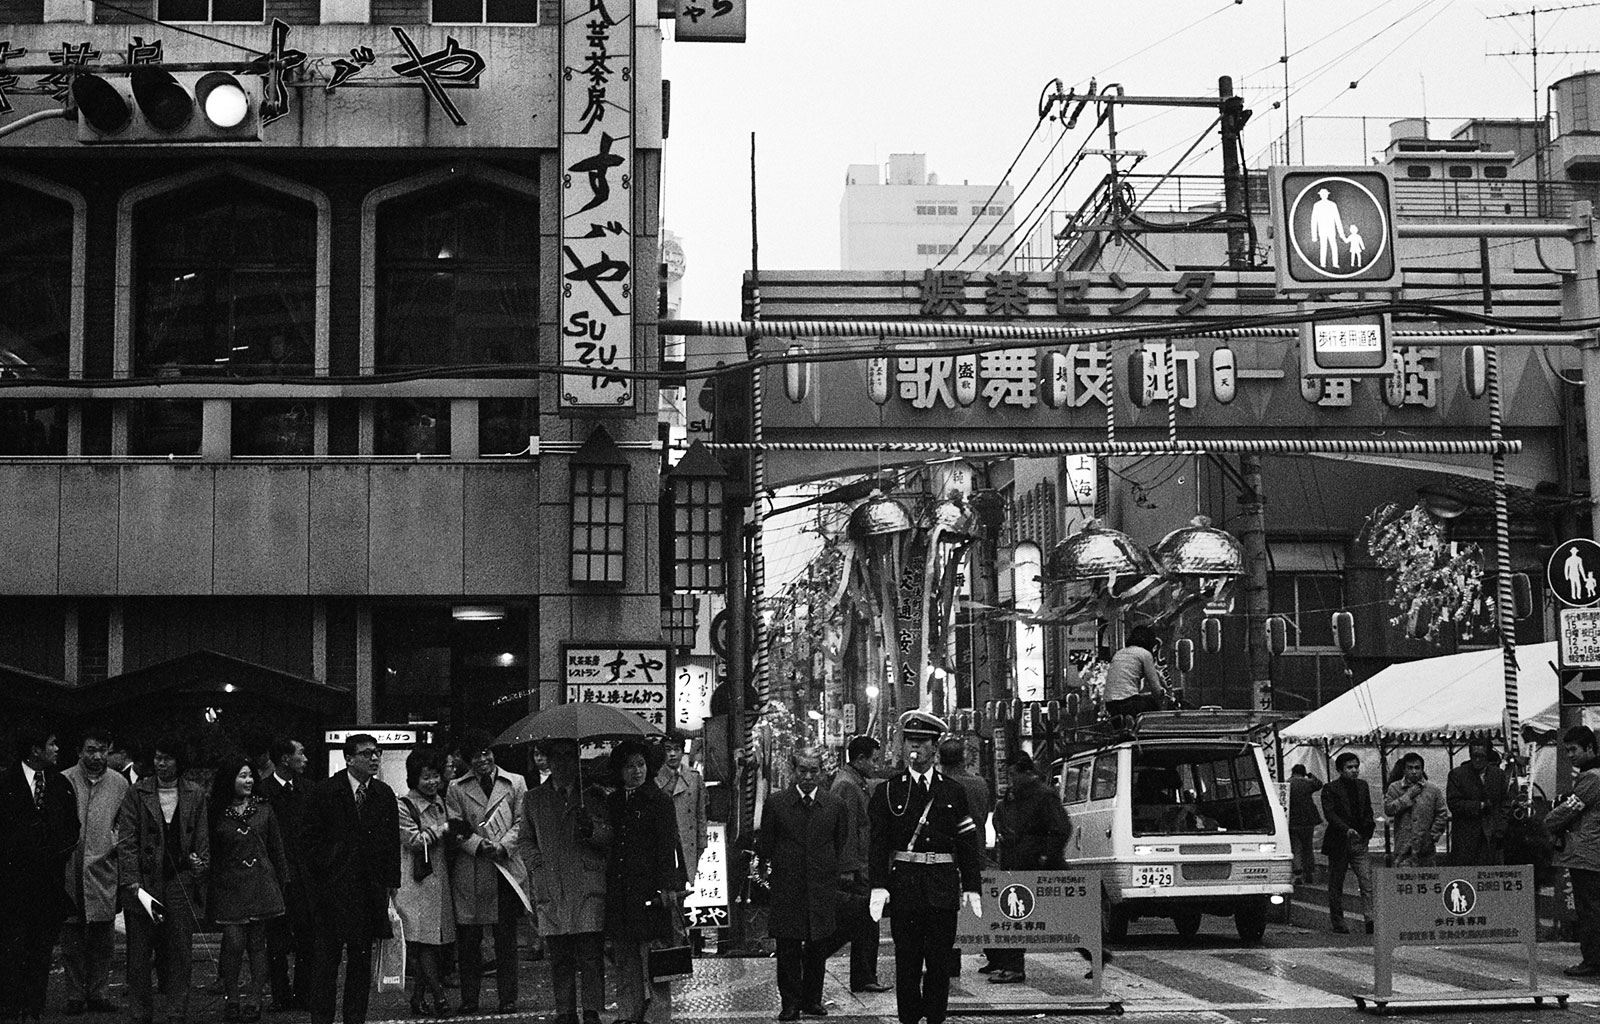 1972（昭和47）年頃の様子（資料提供先、所蔵先：「新宿歴史博物館」）